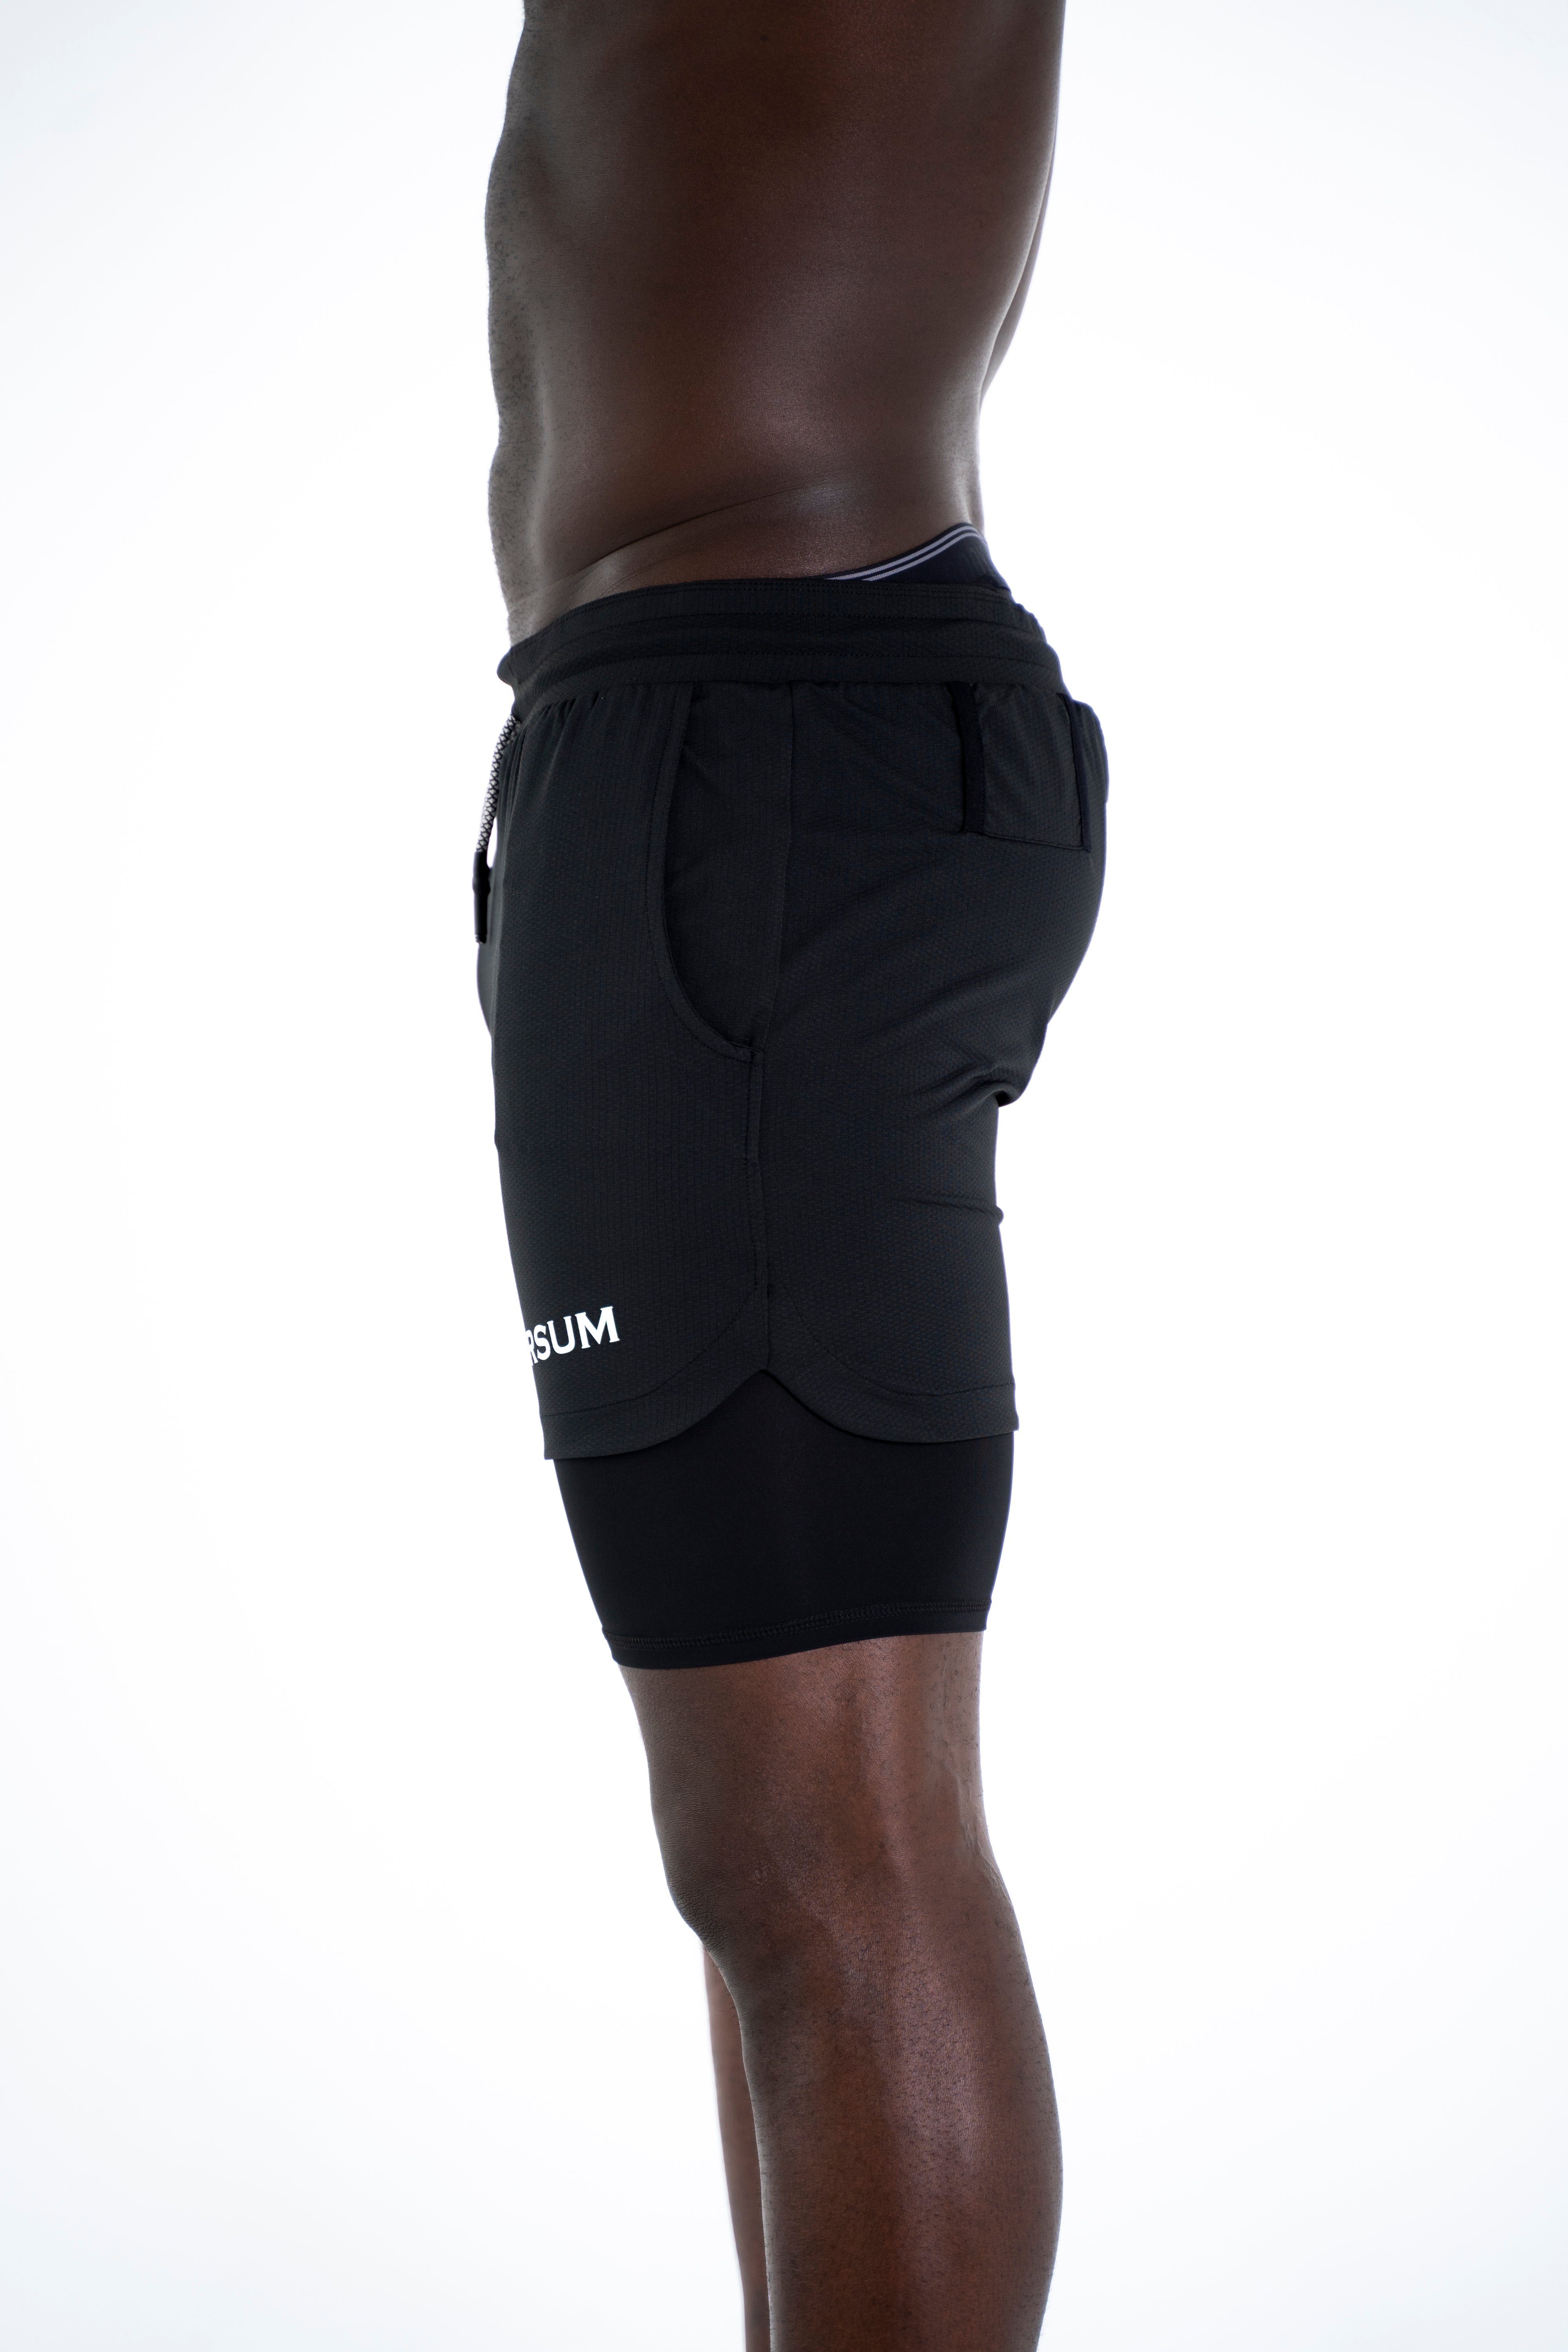 Kurze Shorts versteckter Sporthose Sportwear Handytasche Universum Unterziehhose schwarz mit mit Hose funktioneller